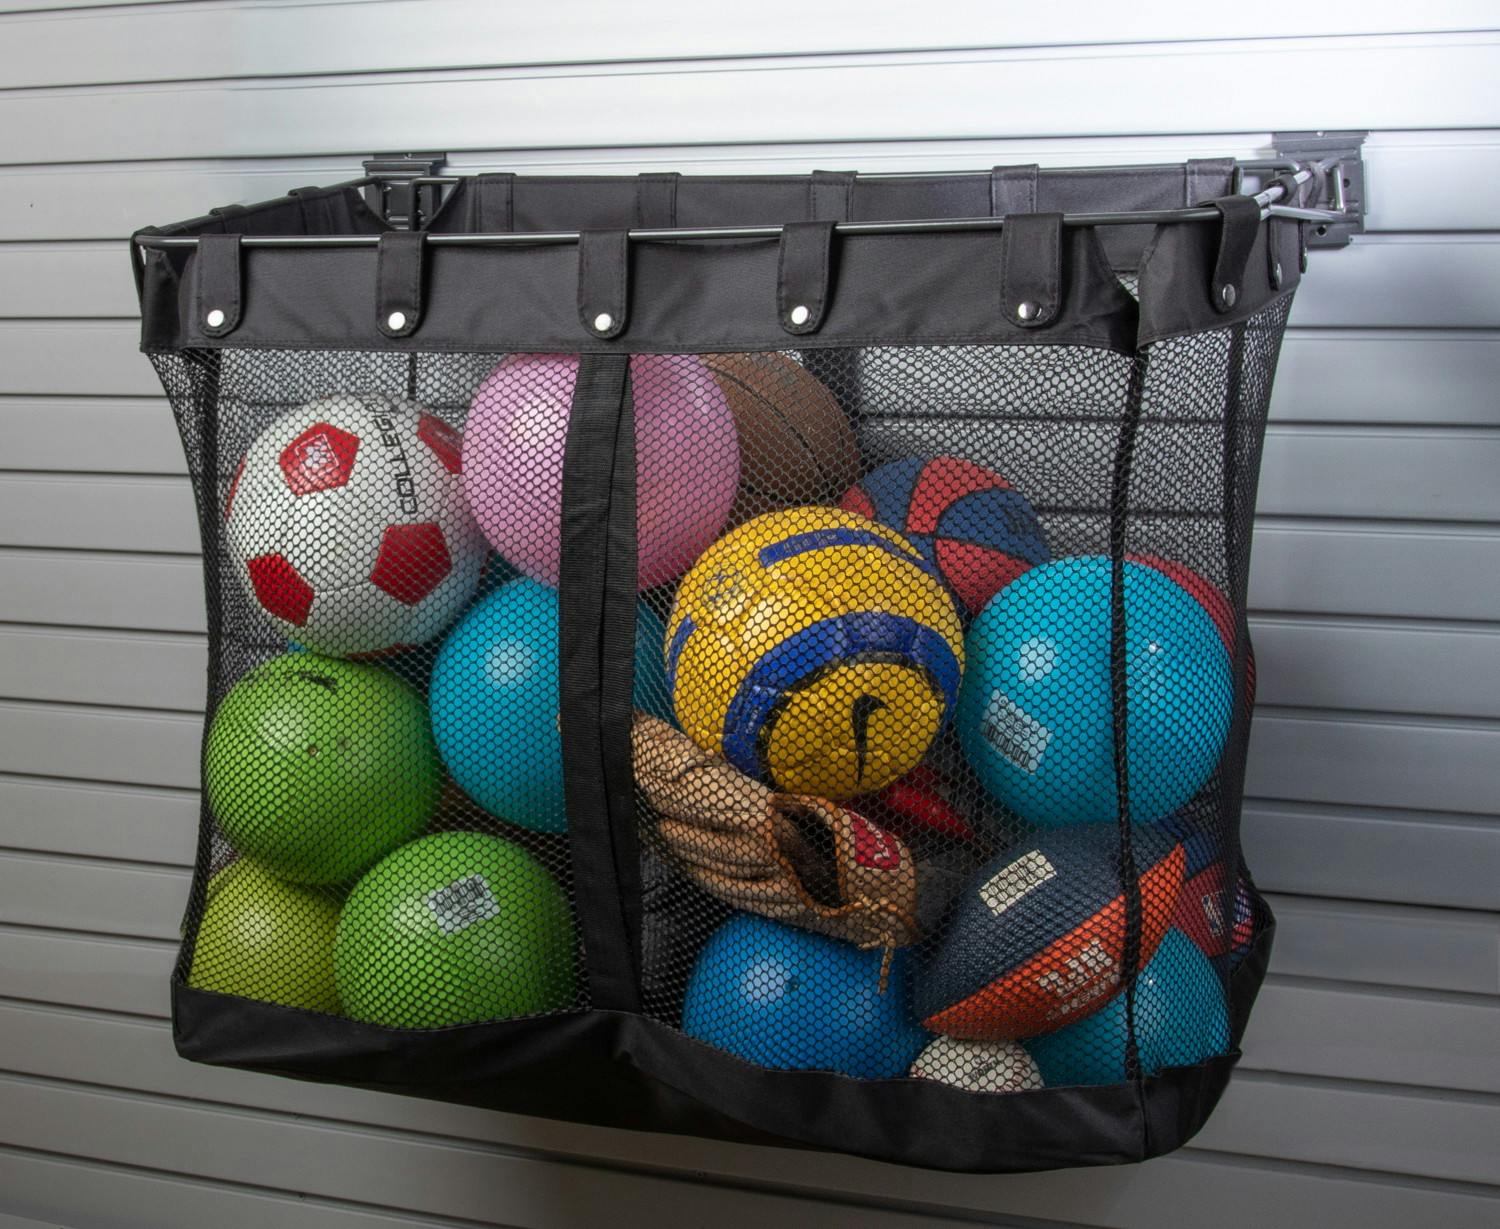 storage bin storing balls